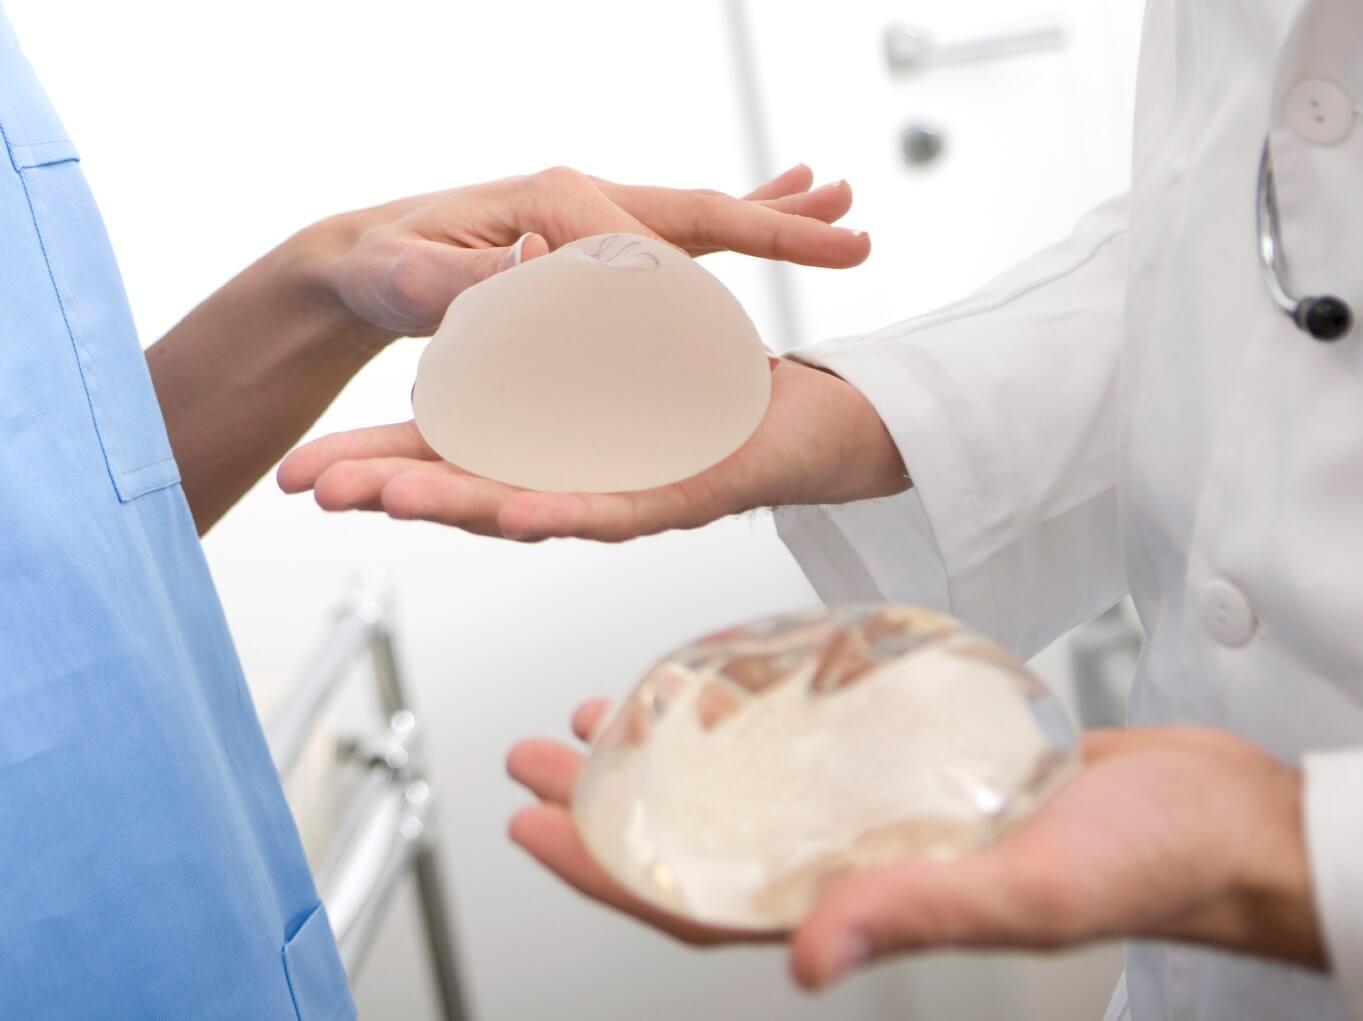 Правильный выбор имплантов и способа их установки крайне важен при наличии любых деформаций грудной клетки